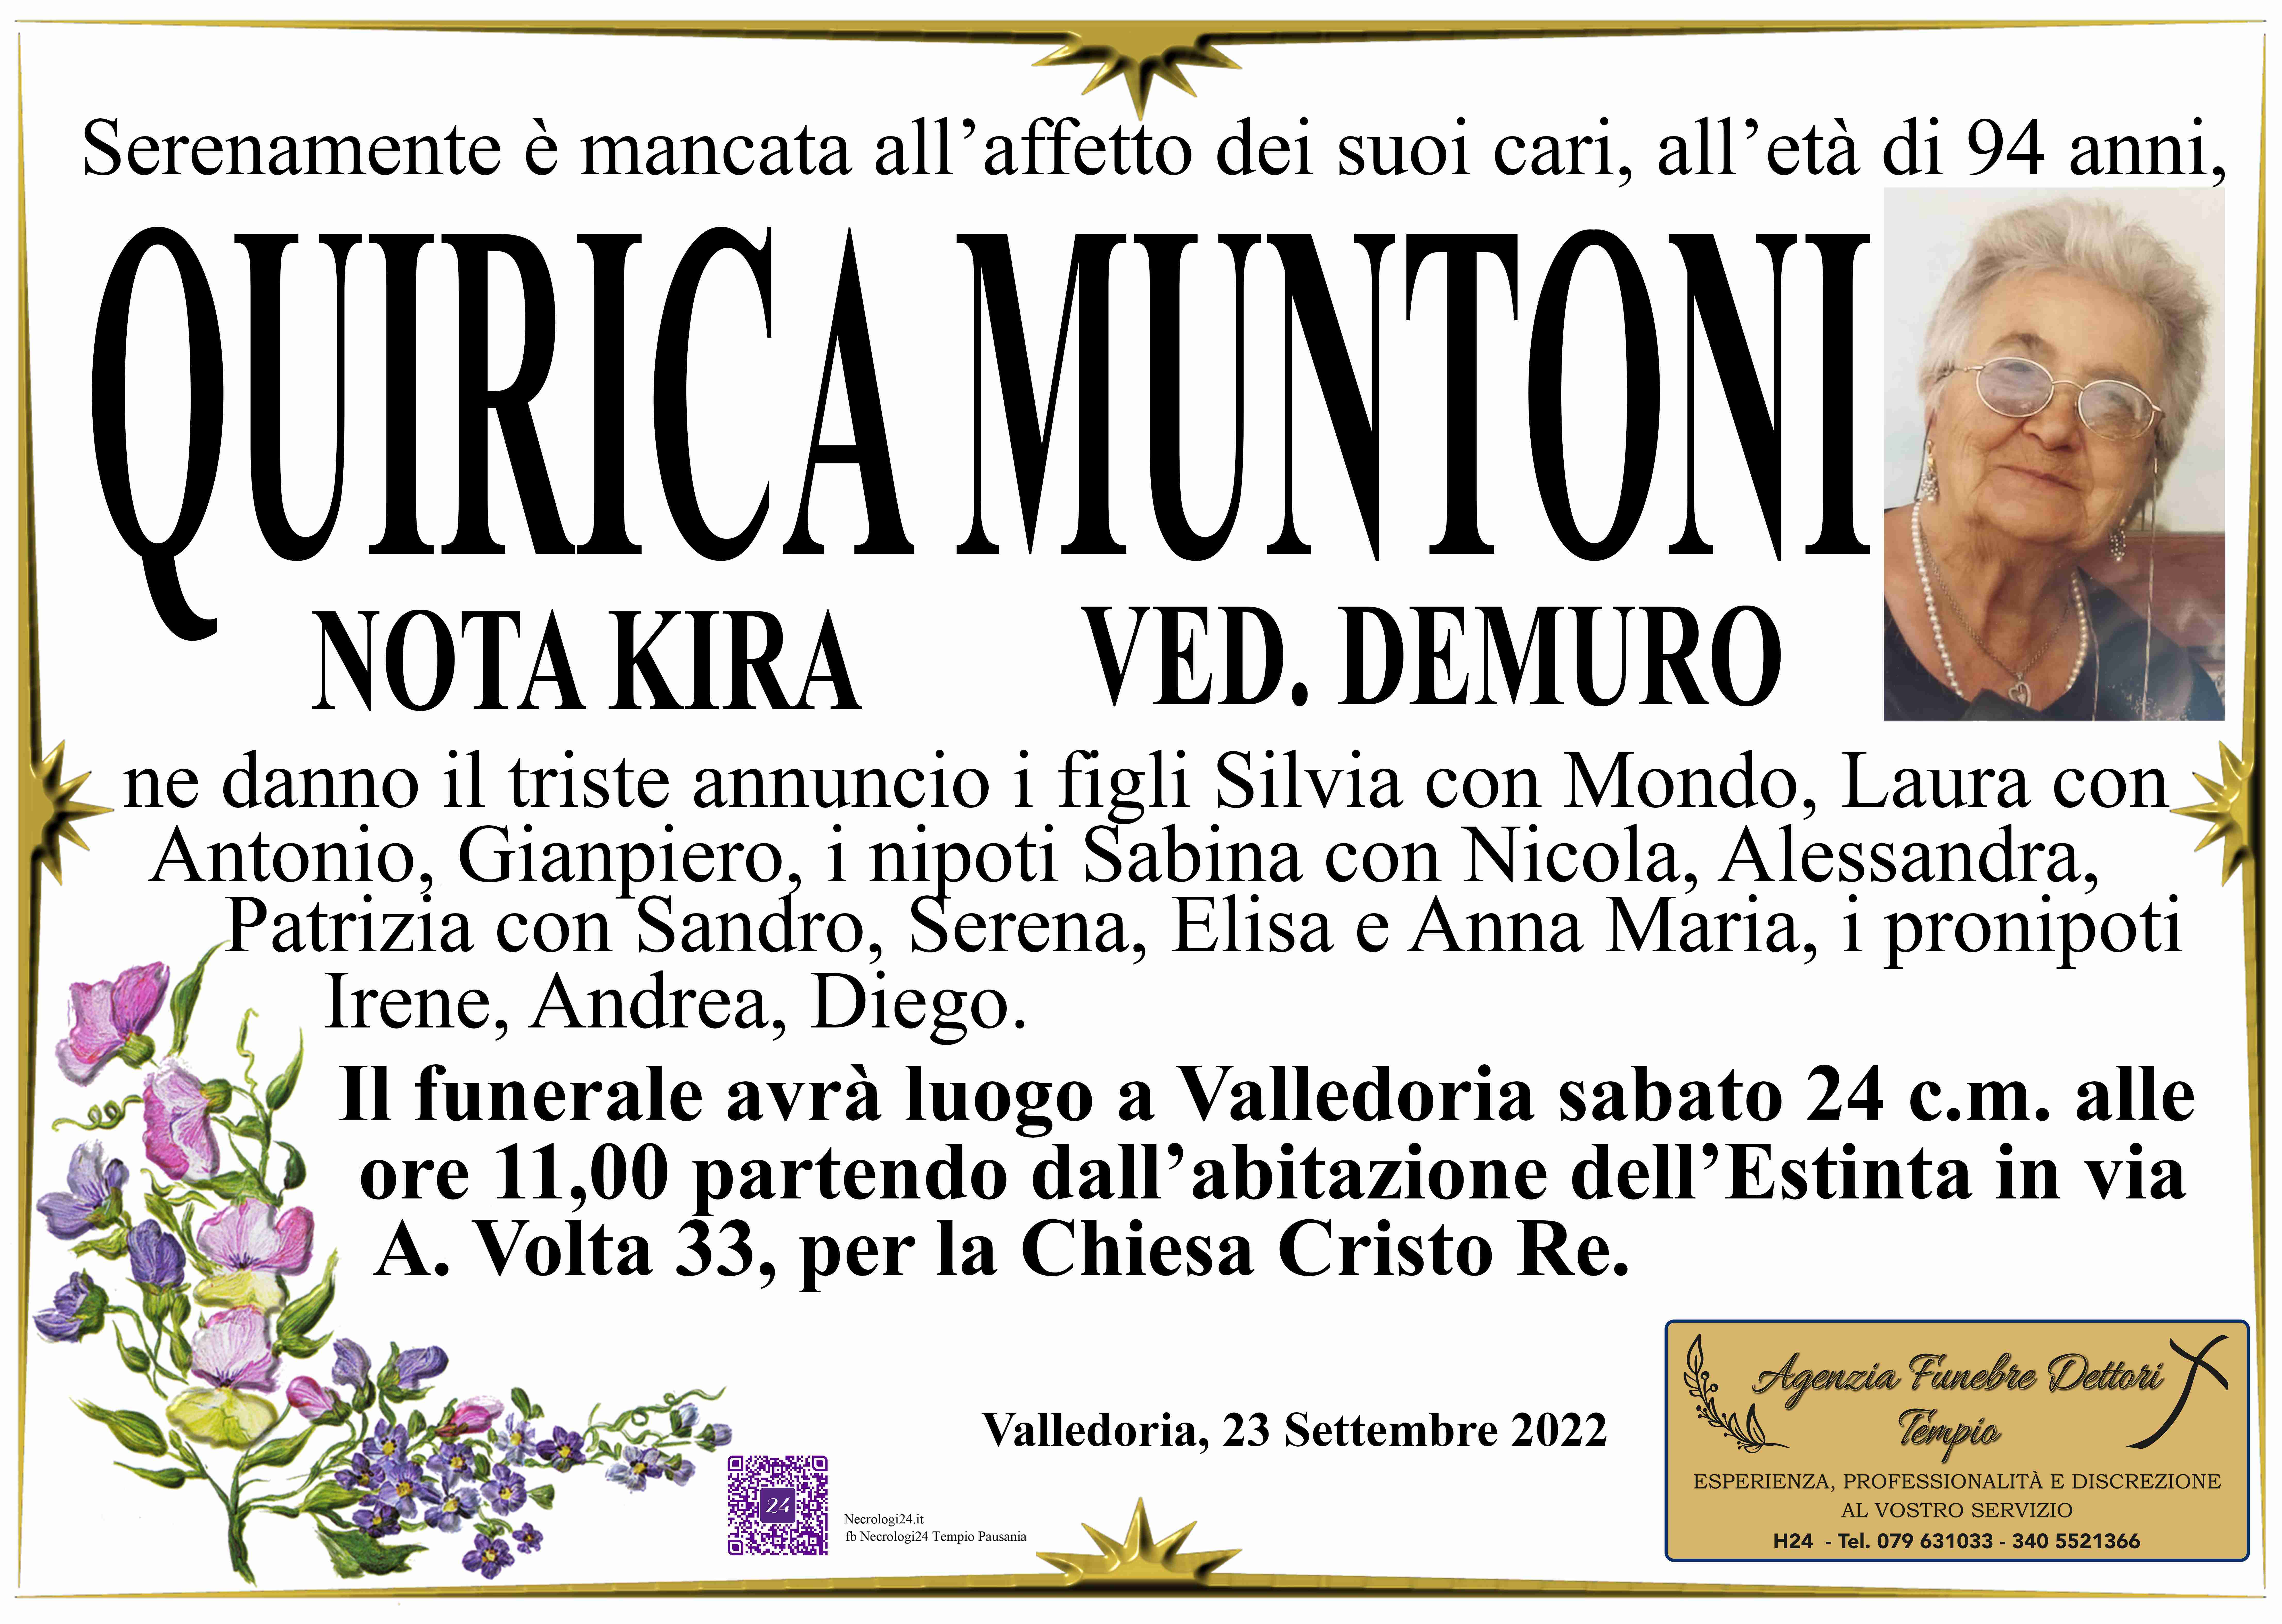 Quirica Muntoni